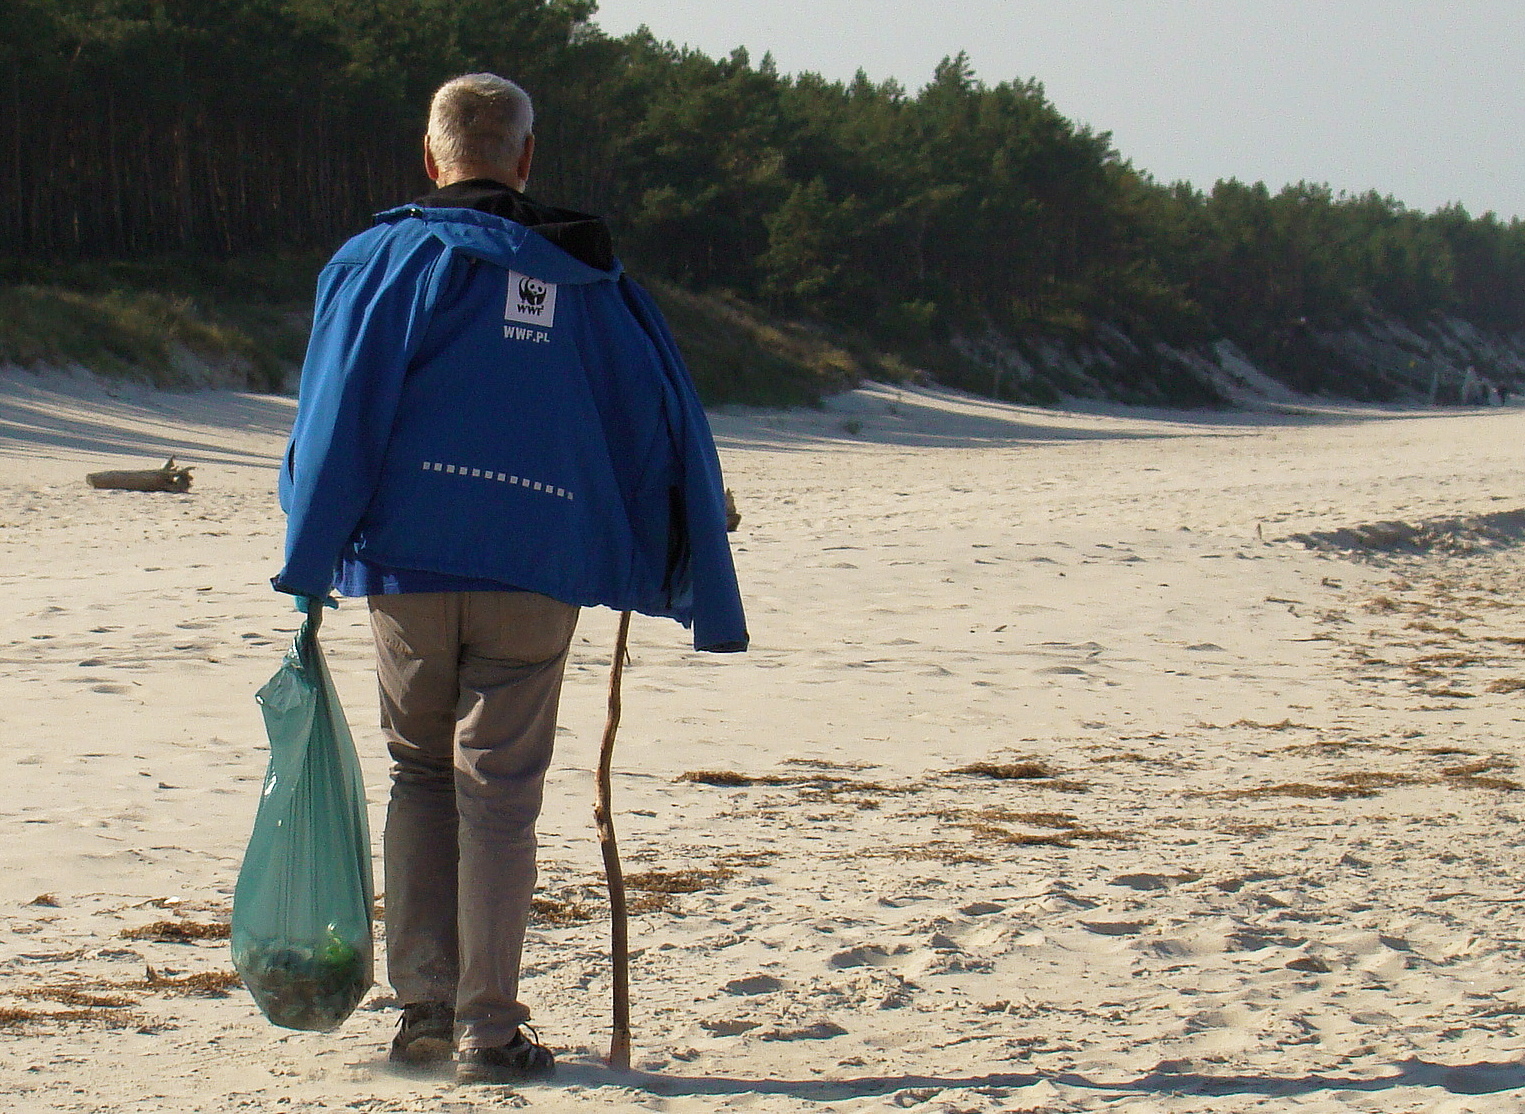 21 - Akcja "Czyste plaże" WWF Polska. Jest coraz lepiej! (+zdjęcia)